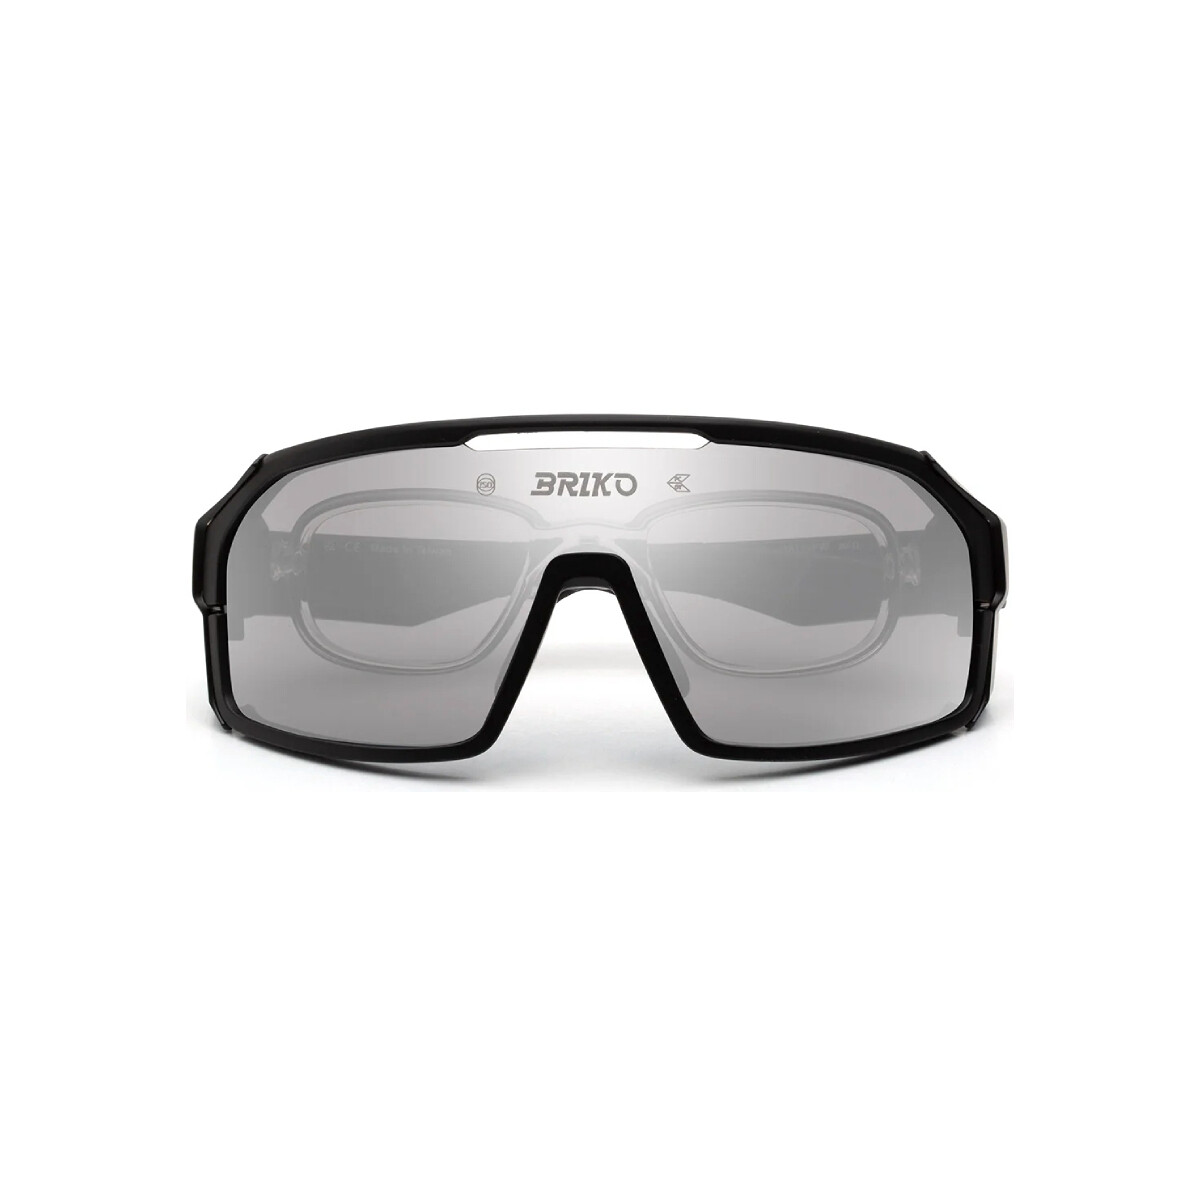 Orologi & Gioielli Occhiali da sole Briko A7I Load Modular Occhiali da sole, Nero/Grigio, 136 mm Nero